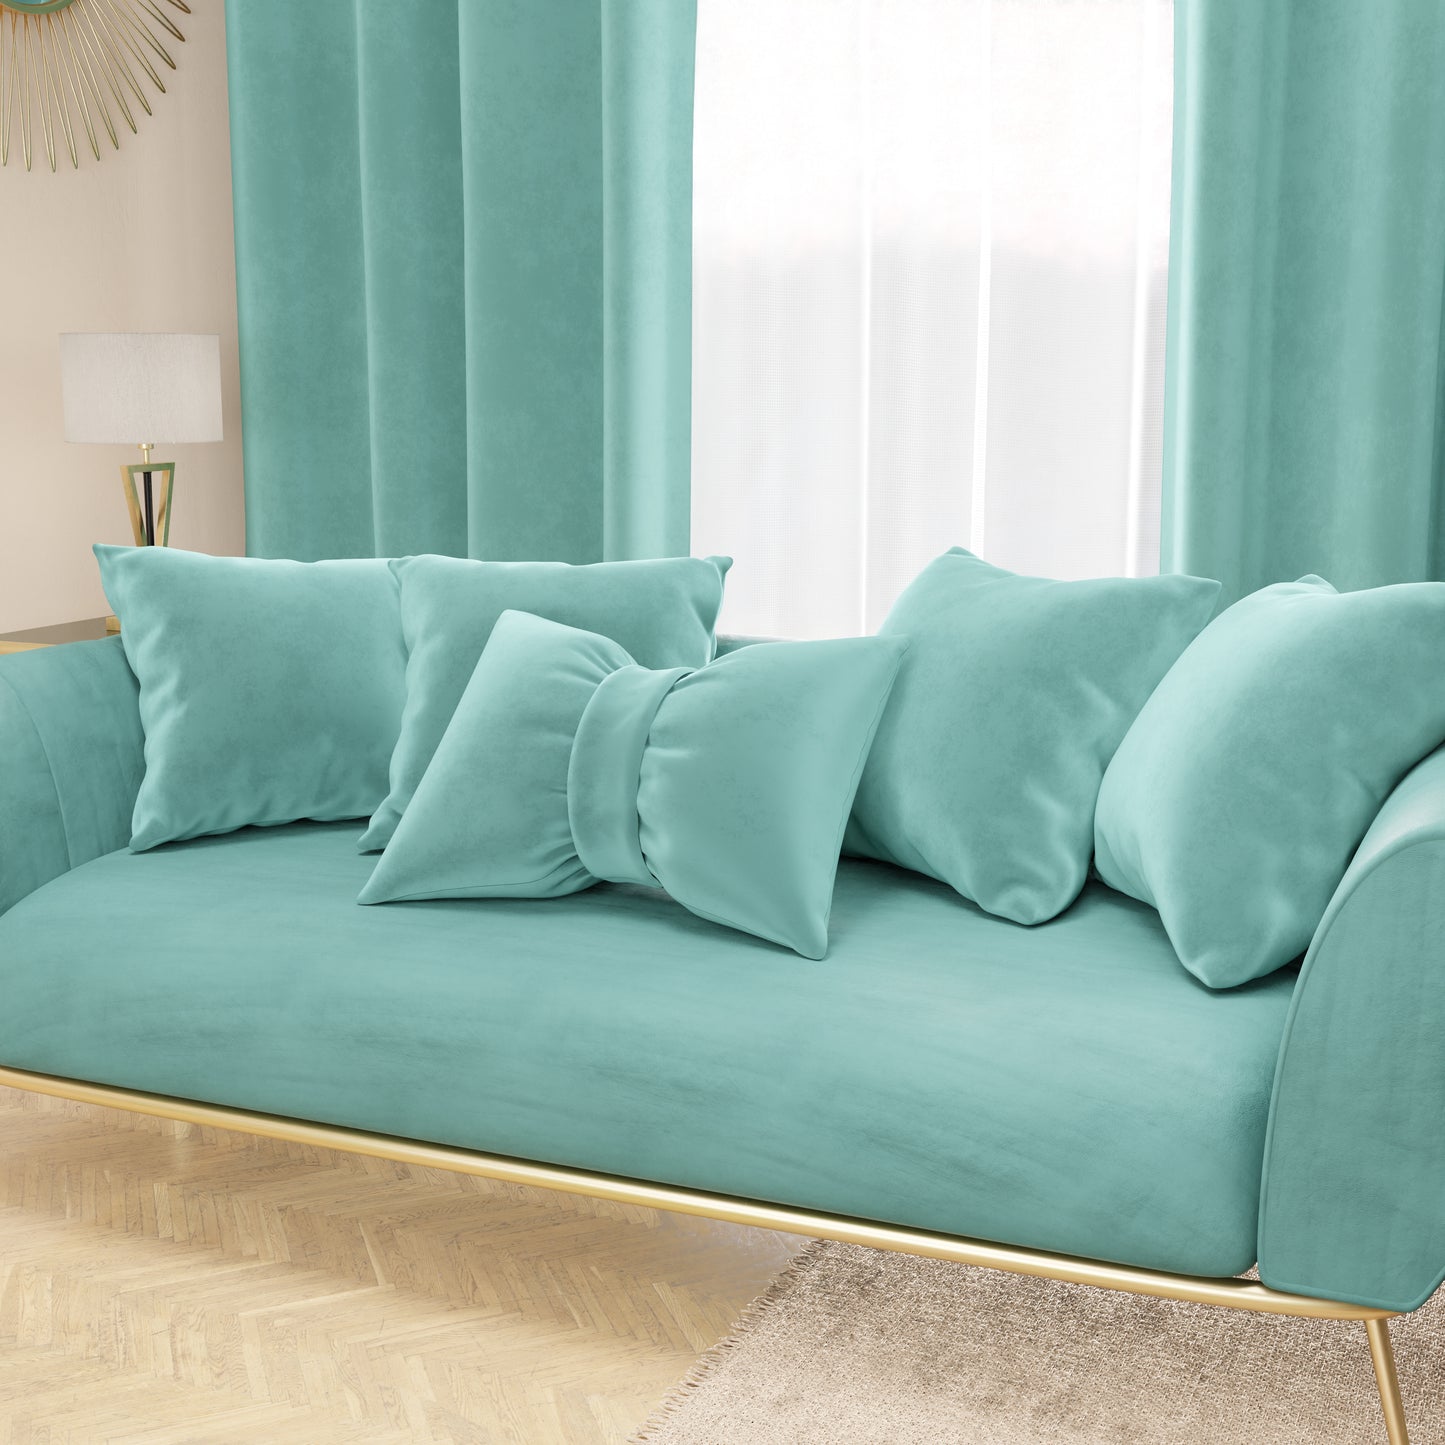 Cuscino Arredo Fiocco in Velluto 40x50 cm, Cuscino divano Tiffany